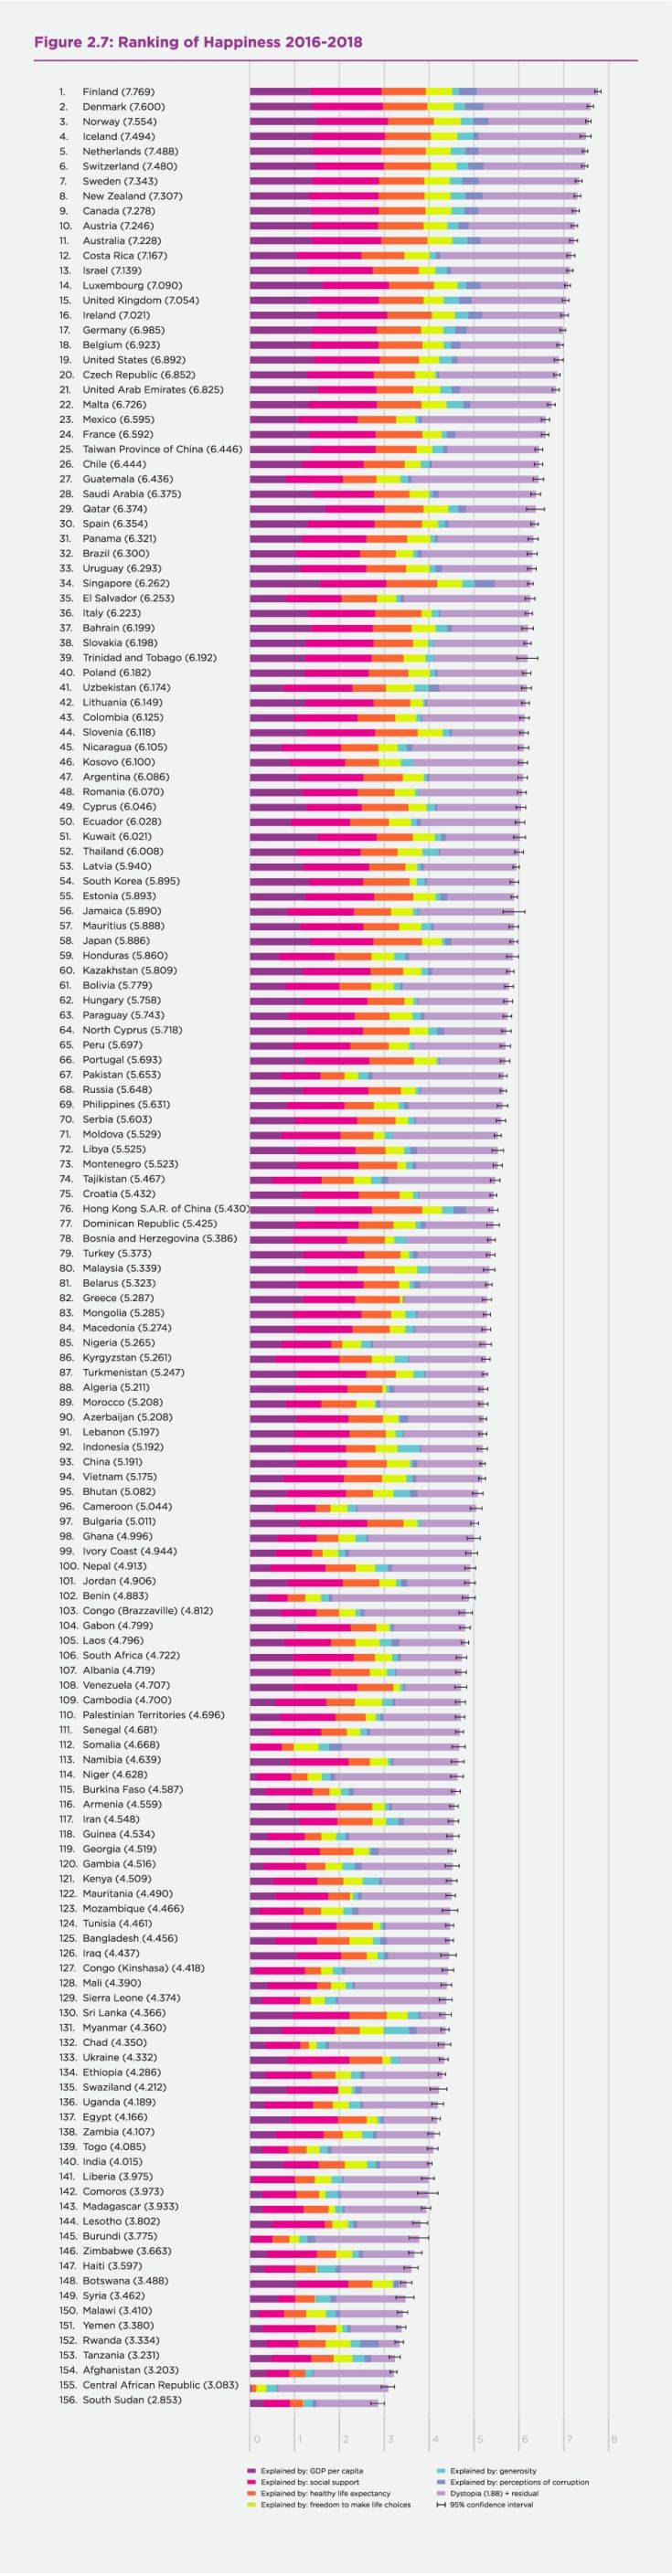 Η λίστα με τις πιο ευτυχισμένες χώρες του κόσμου και η θέση της Ελλάδας - Φωτογραφία 2